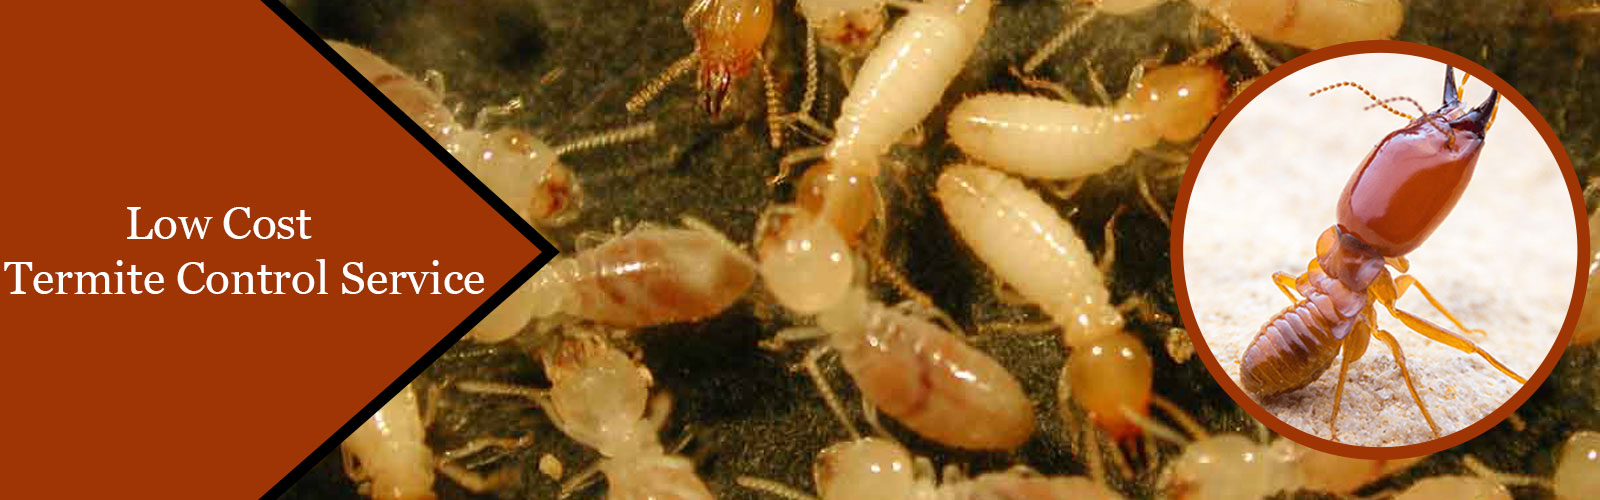 termite control in chennai